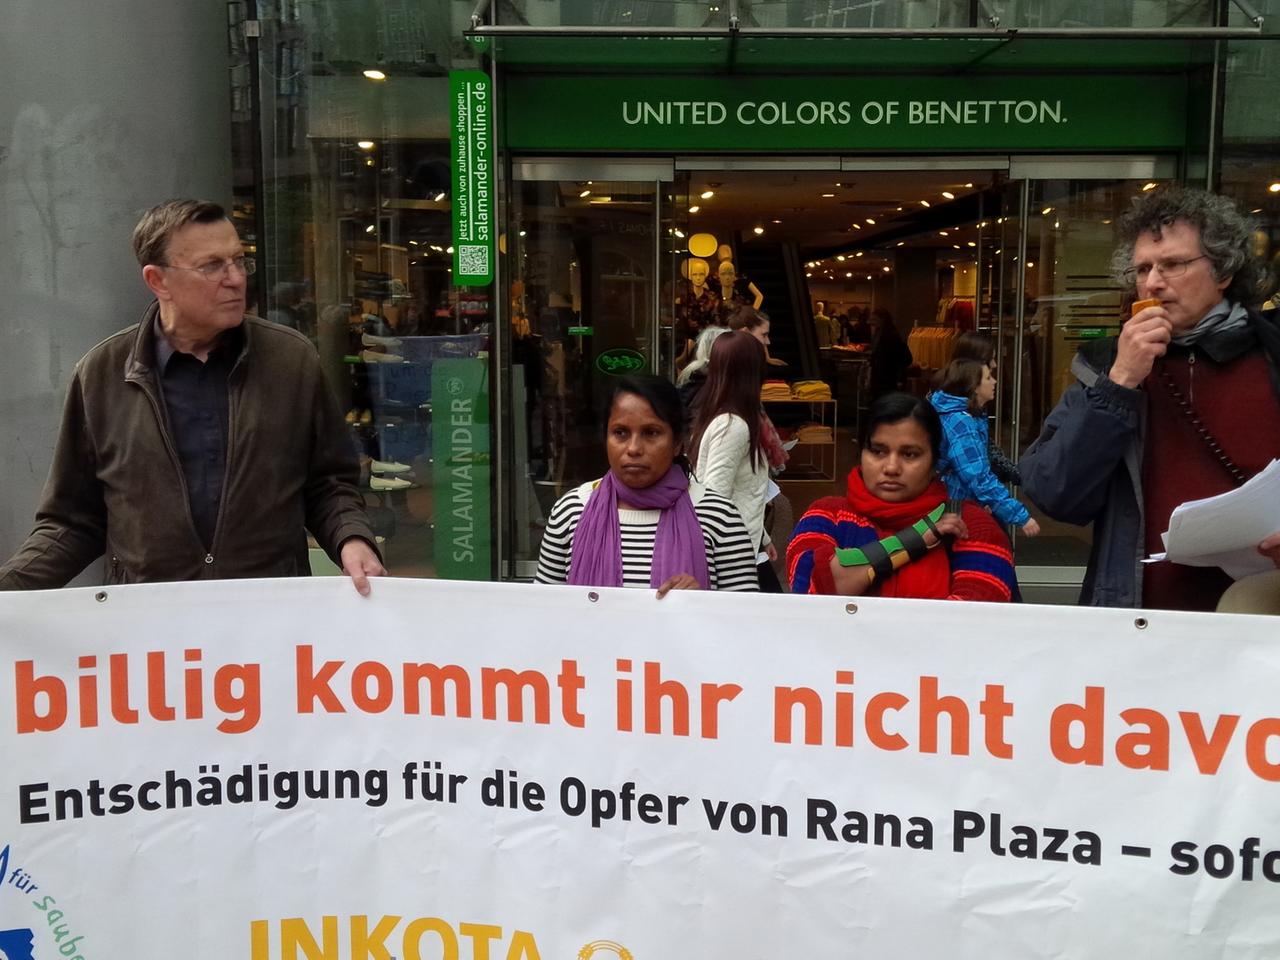 "So billig kommt ihr nicht davon!" - Demonstranten fordern Entschädigung für die Opfer von Rana Plaza